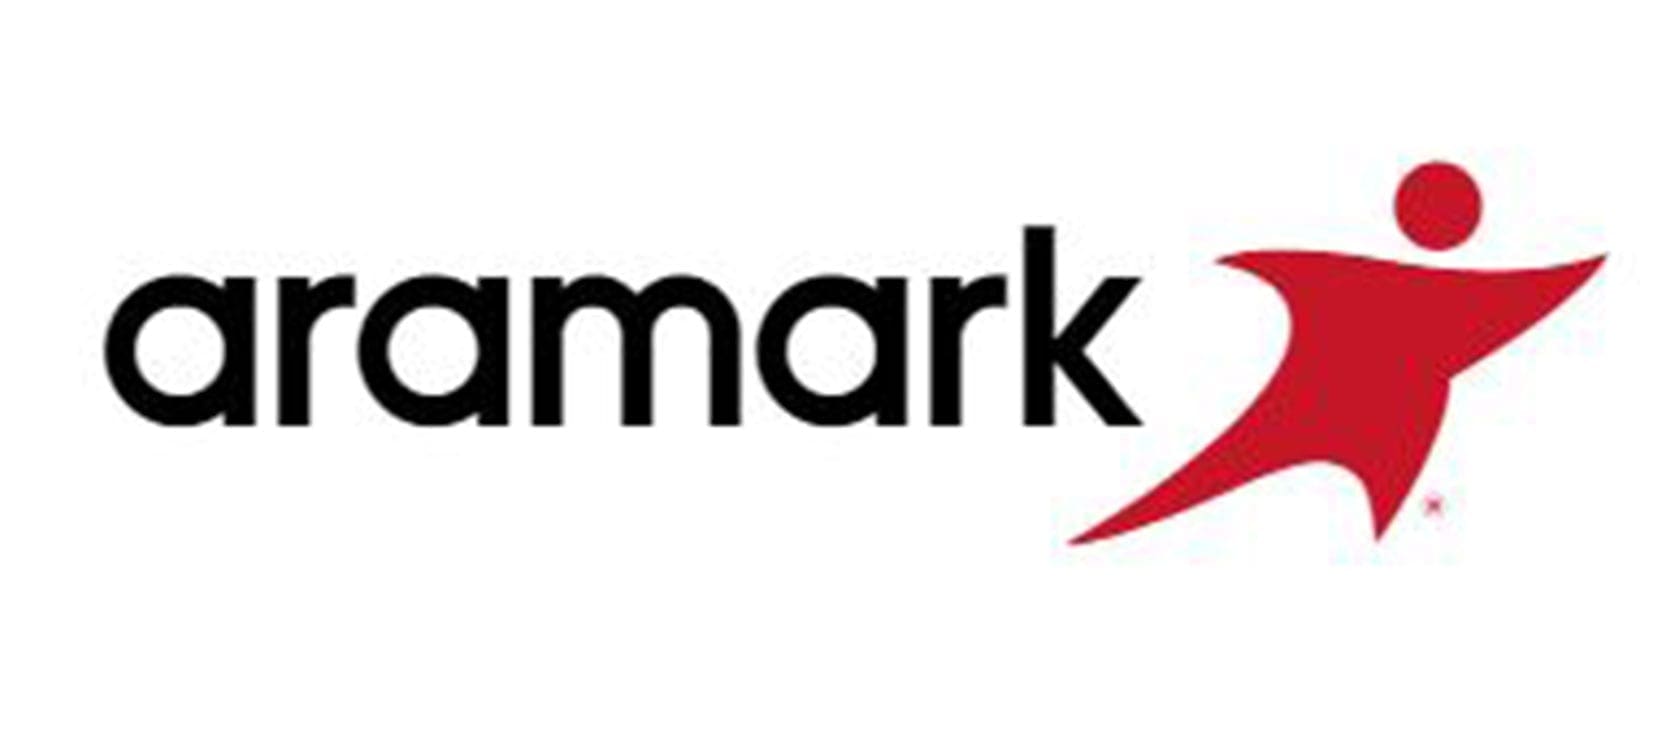 aramark